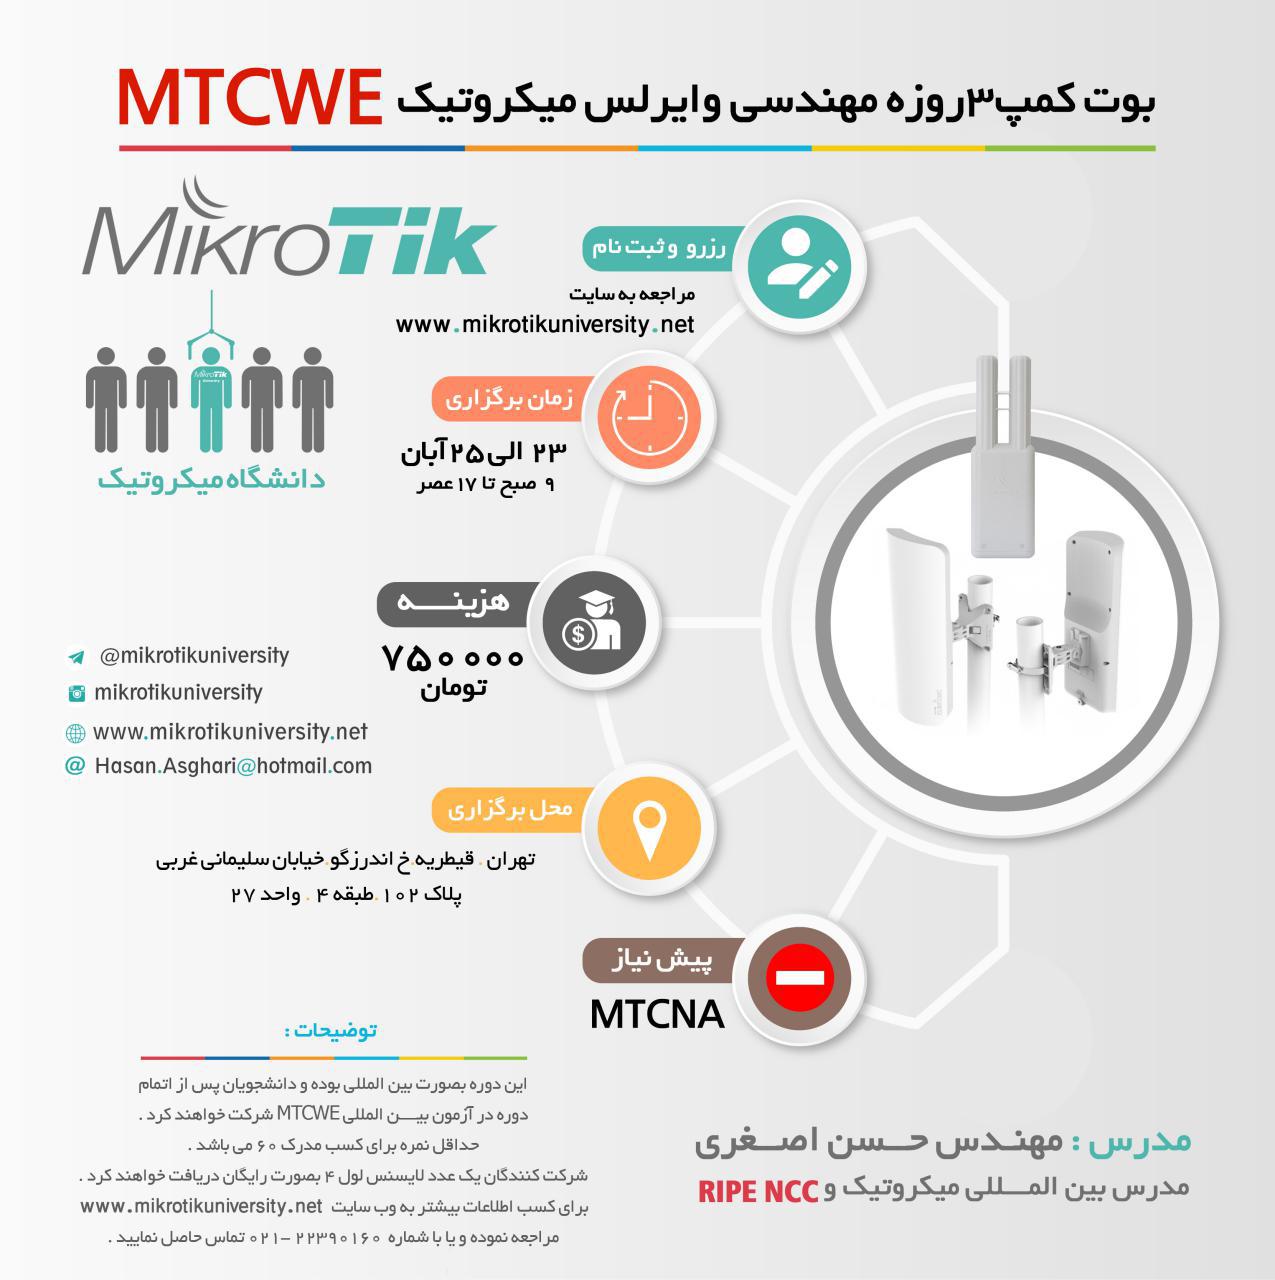 بوت کمپ آموزشی مهندسی وایرلس میکروتیک MTCWE تهران 23 الی 25 آبان